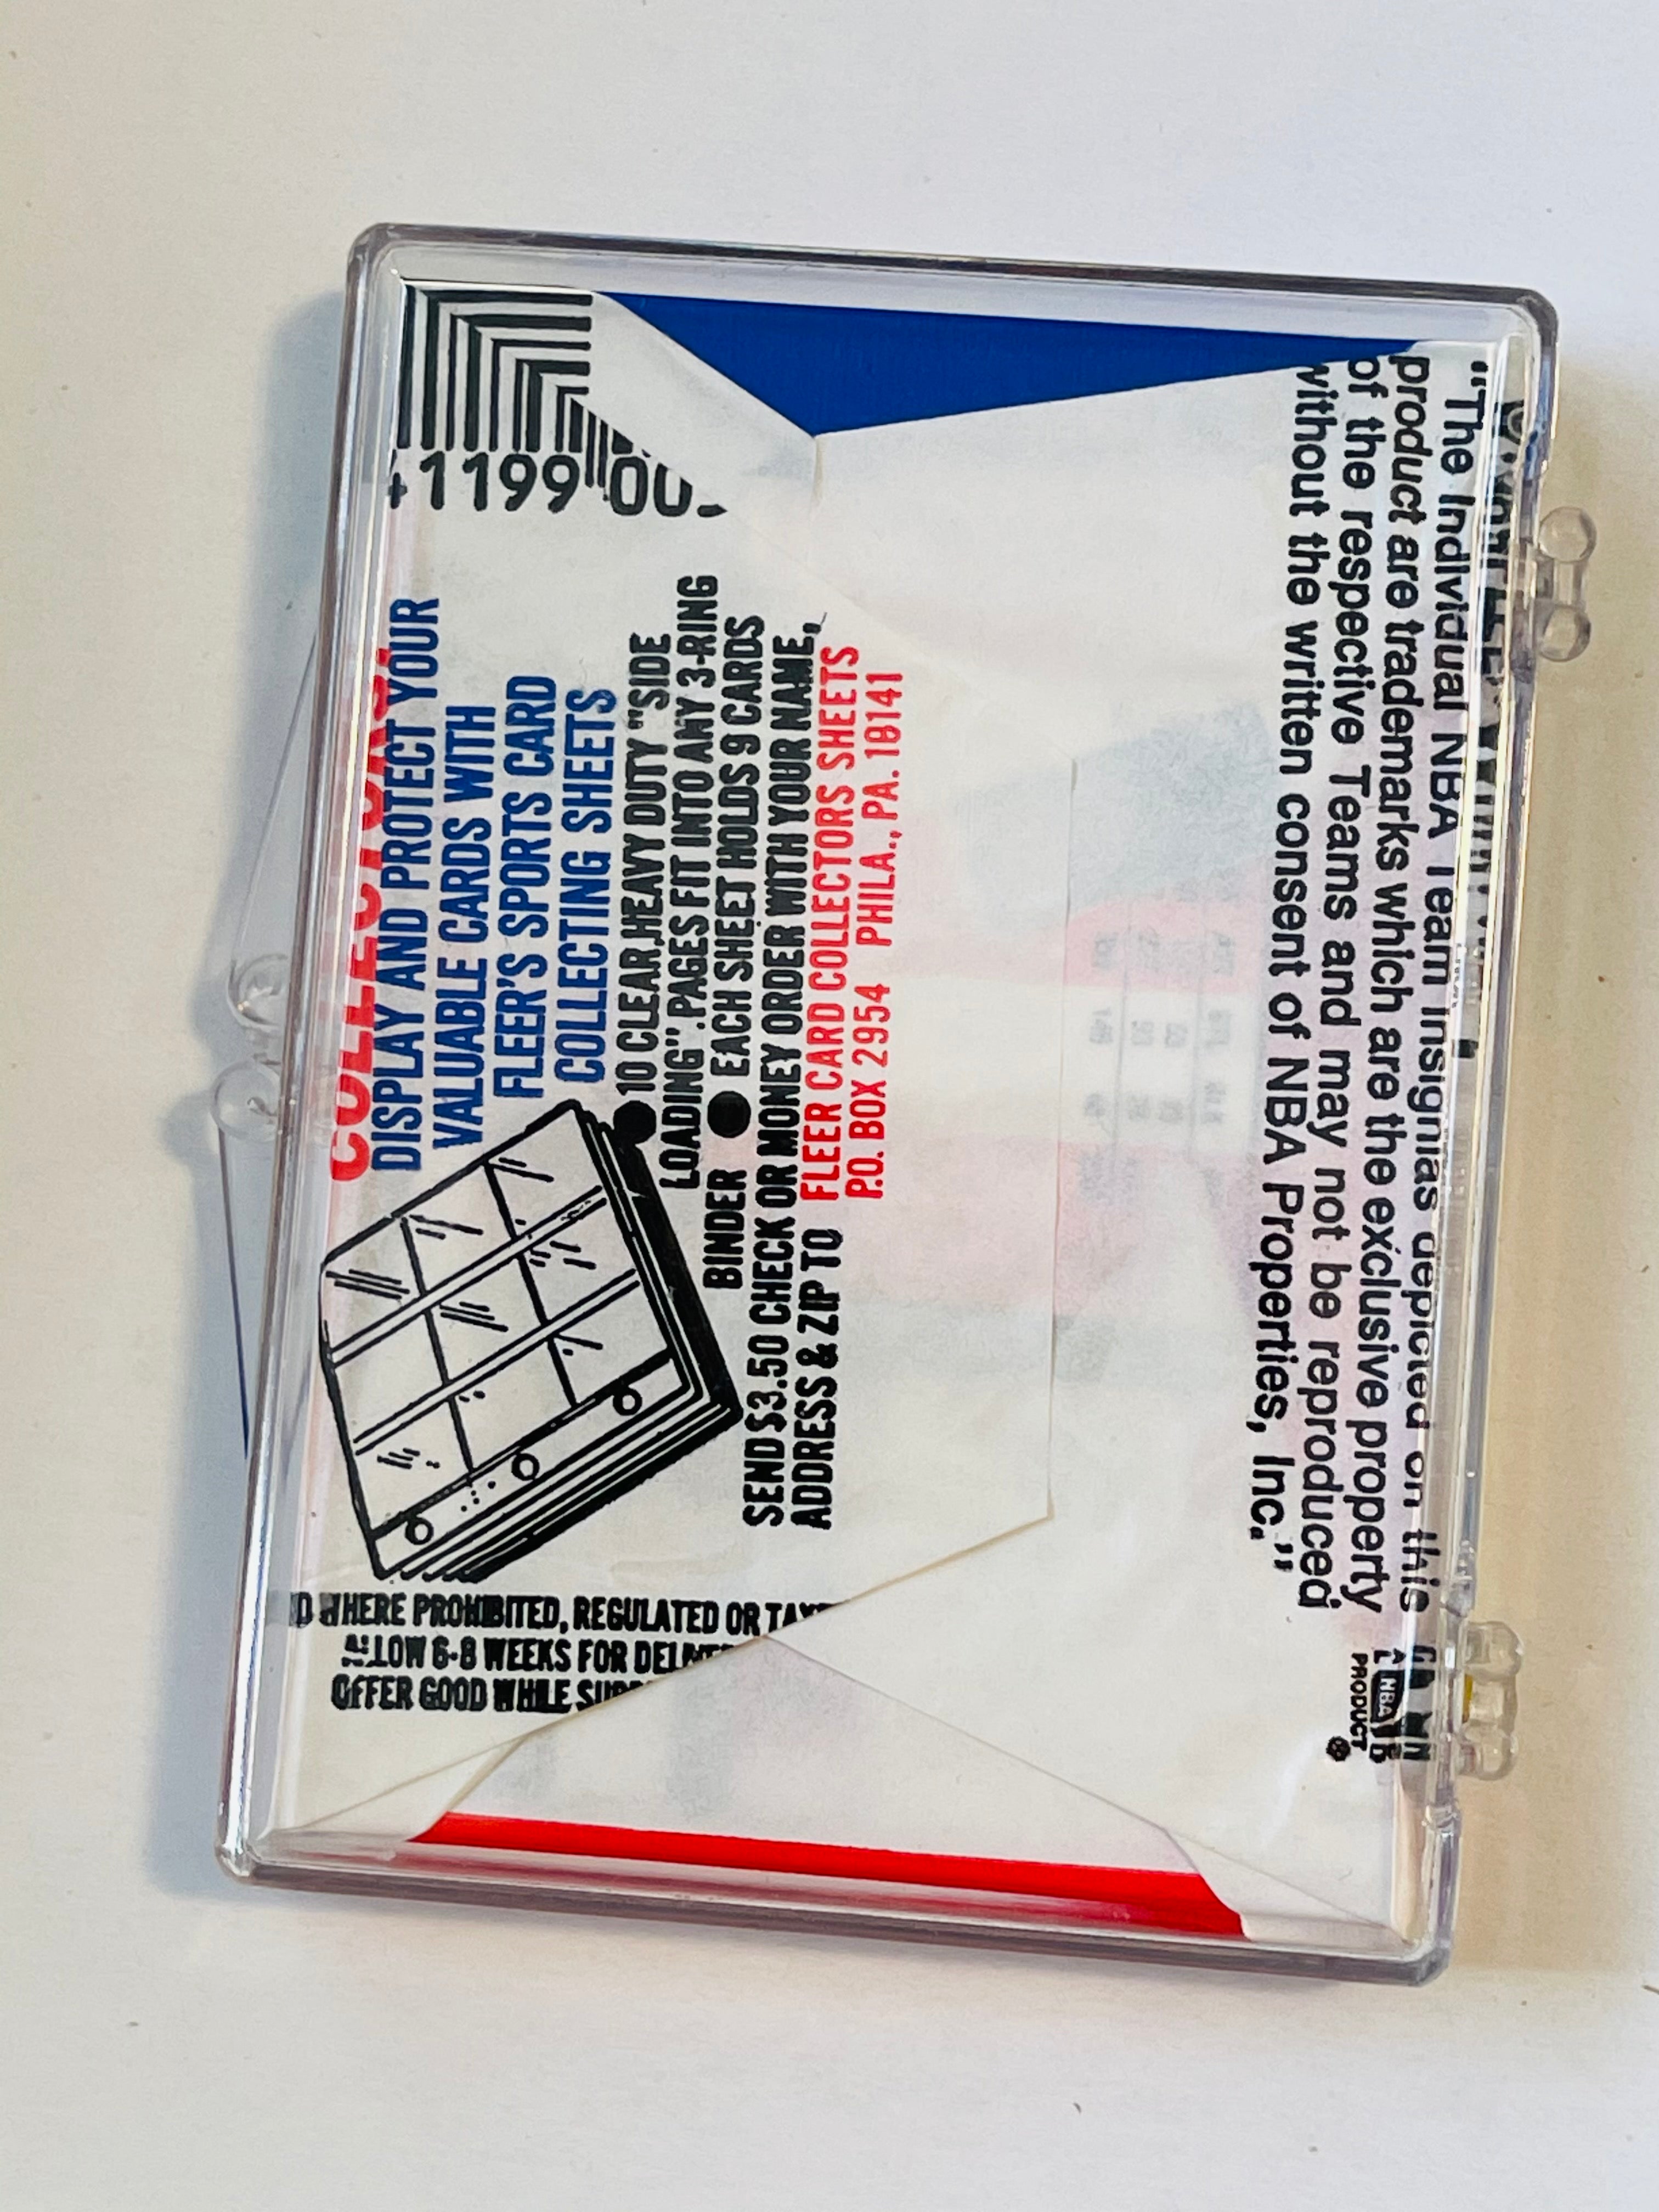 1989 Fleer basketball cards sealed pack